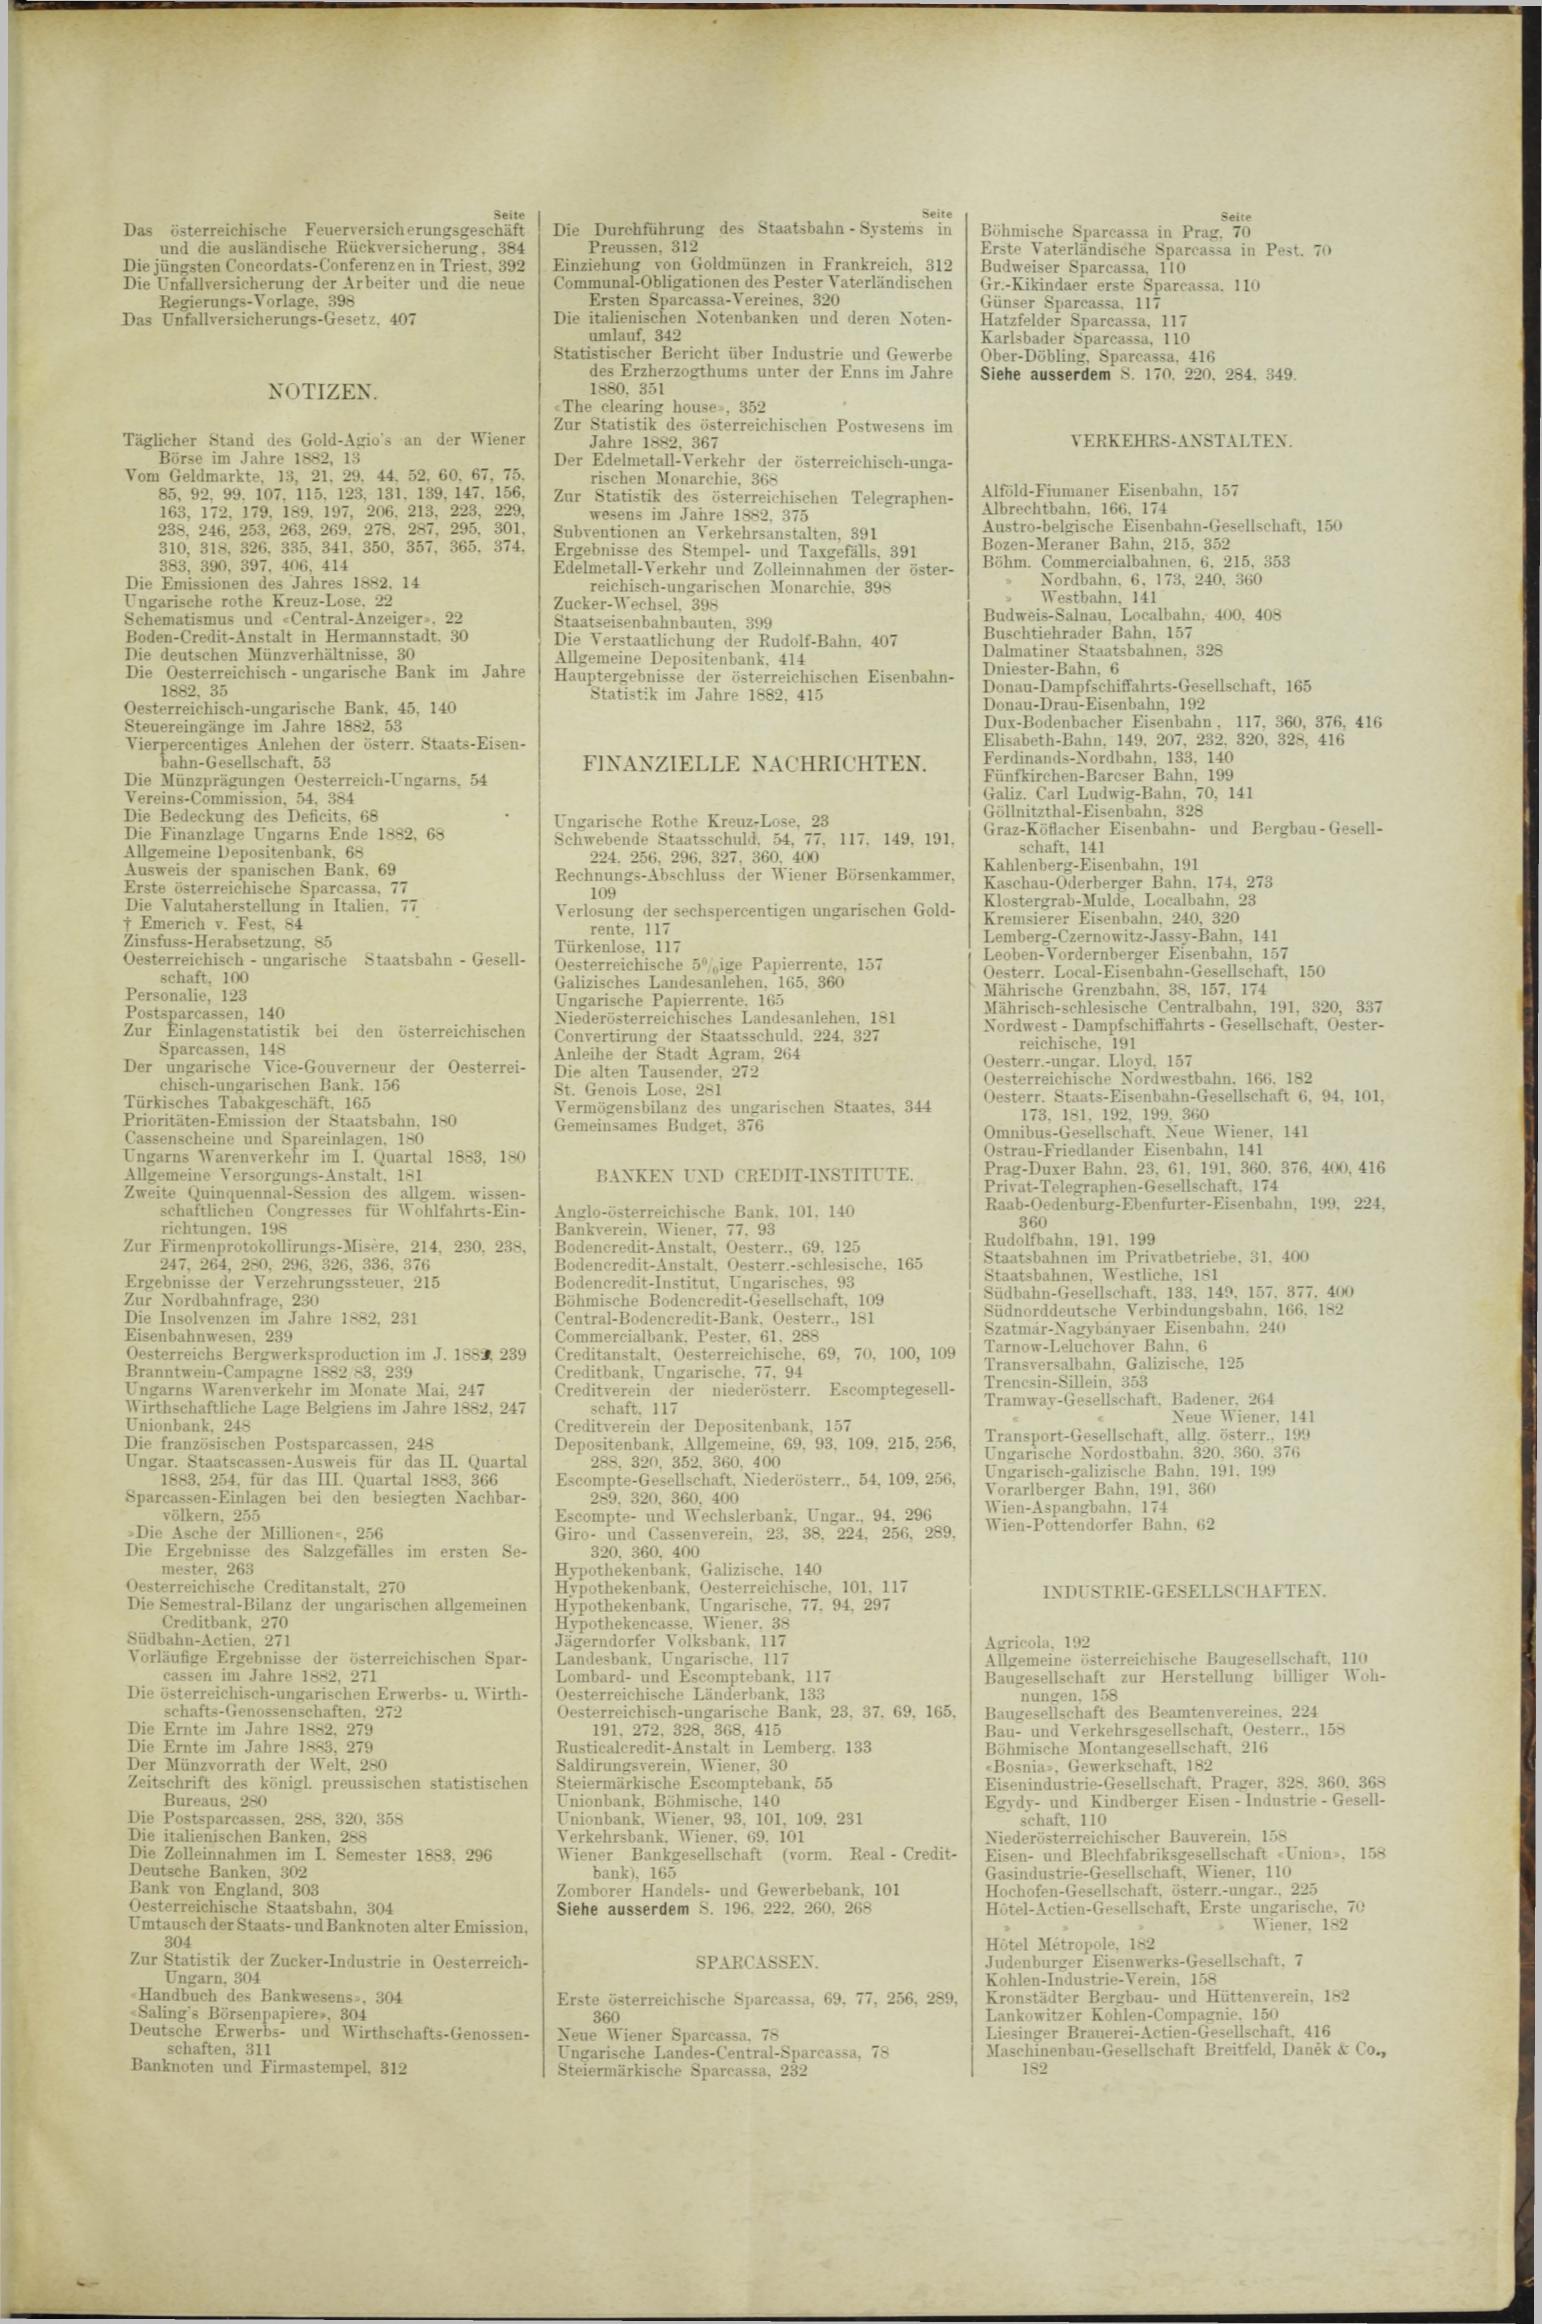 Der Tresor 13.12.1883 - Seite 11